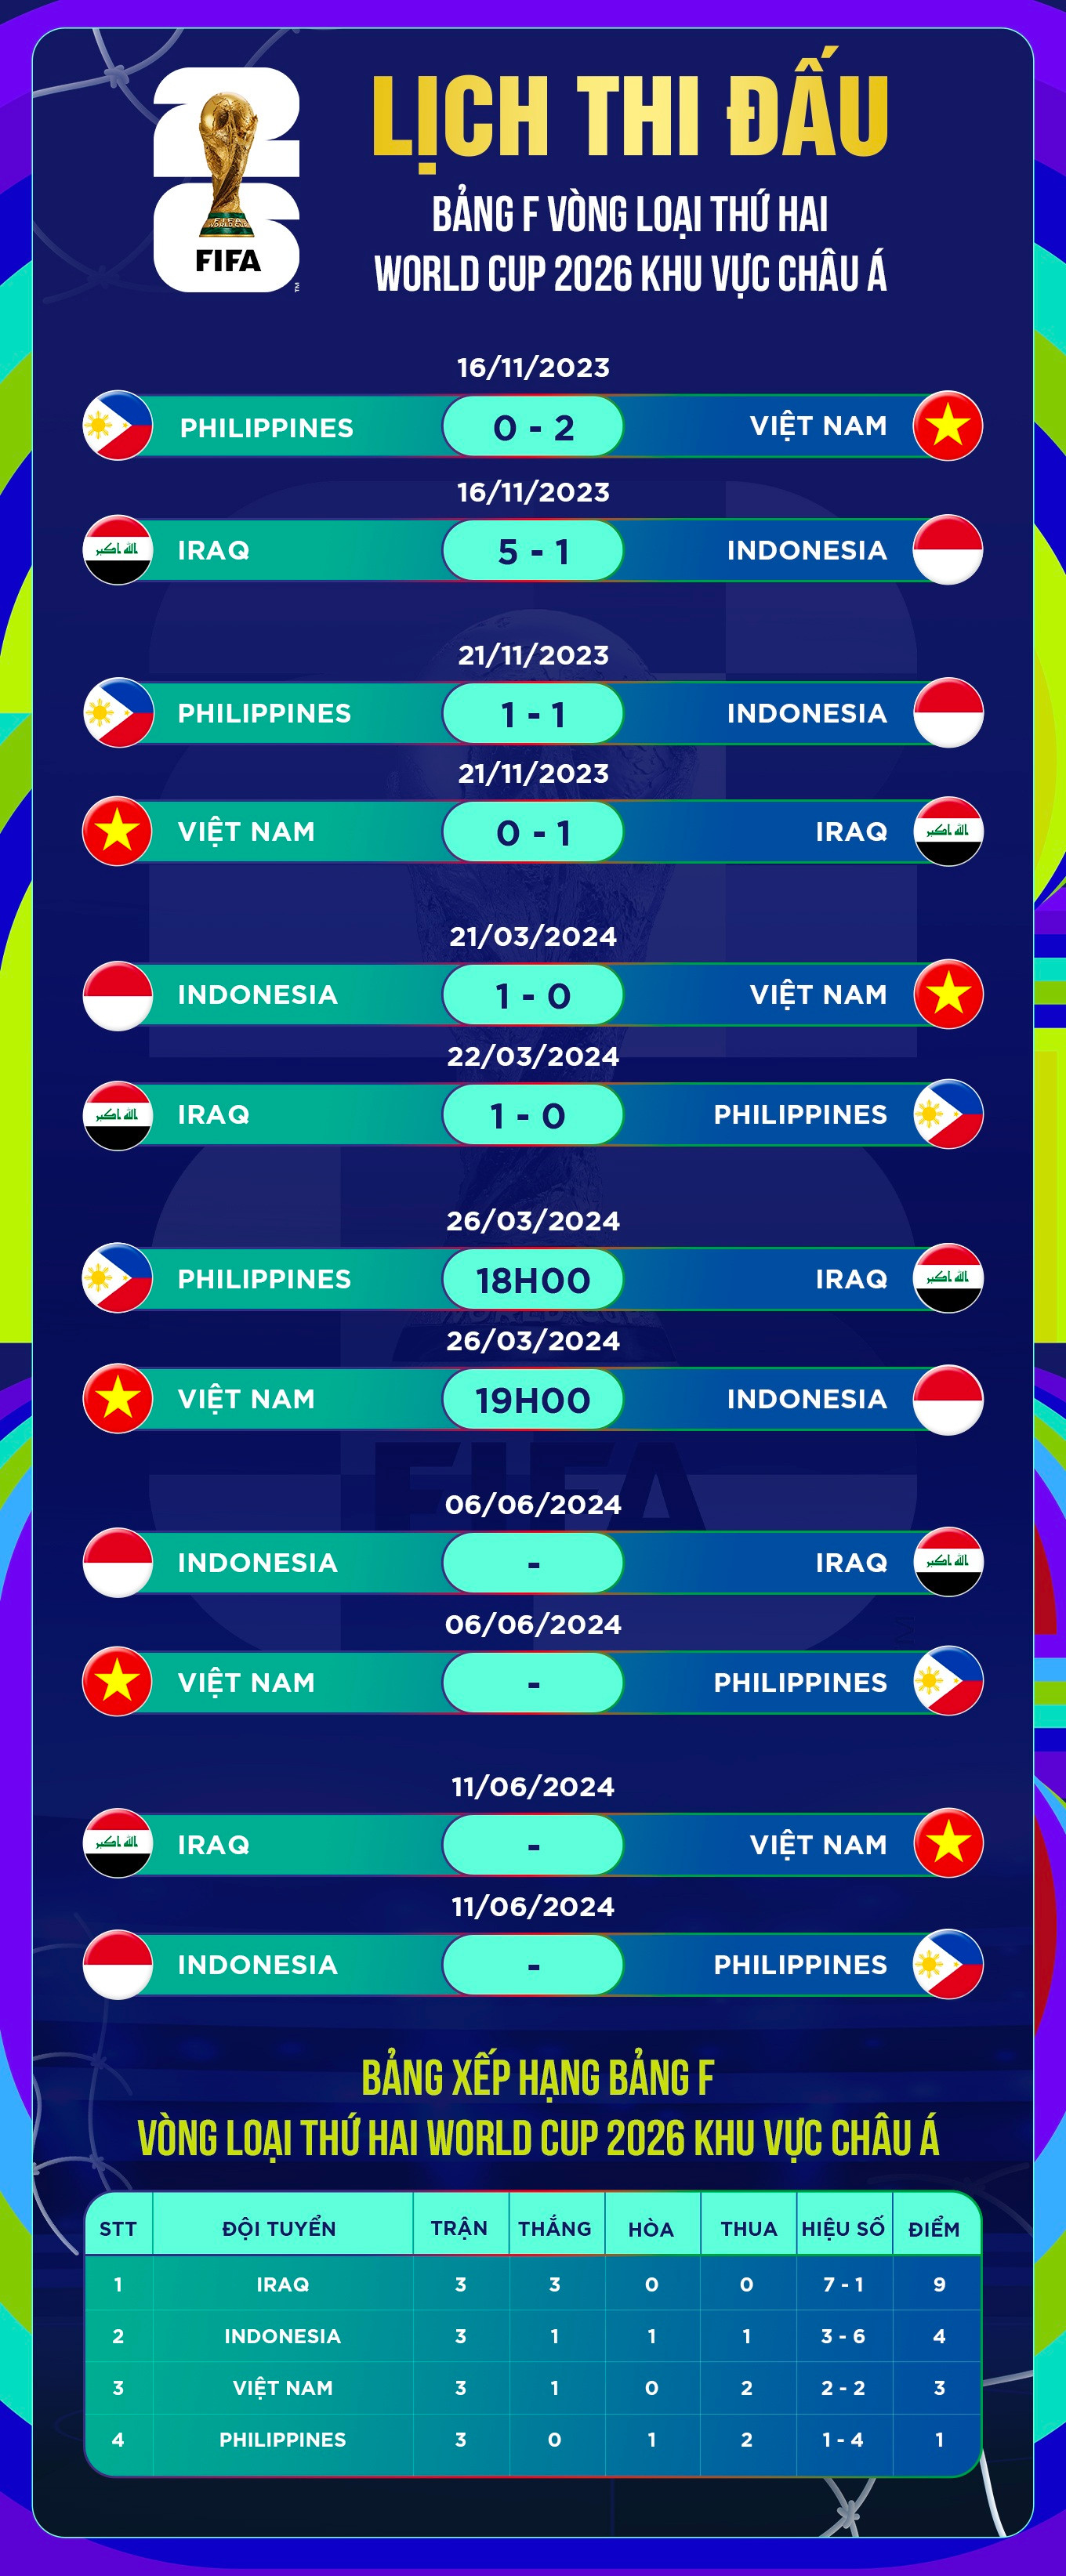 Mặt cỏ sân Mỹ Đình xanh mướt trước trận đội tuyển Việt Nam - Indonesia - 15